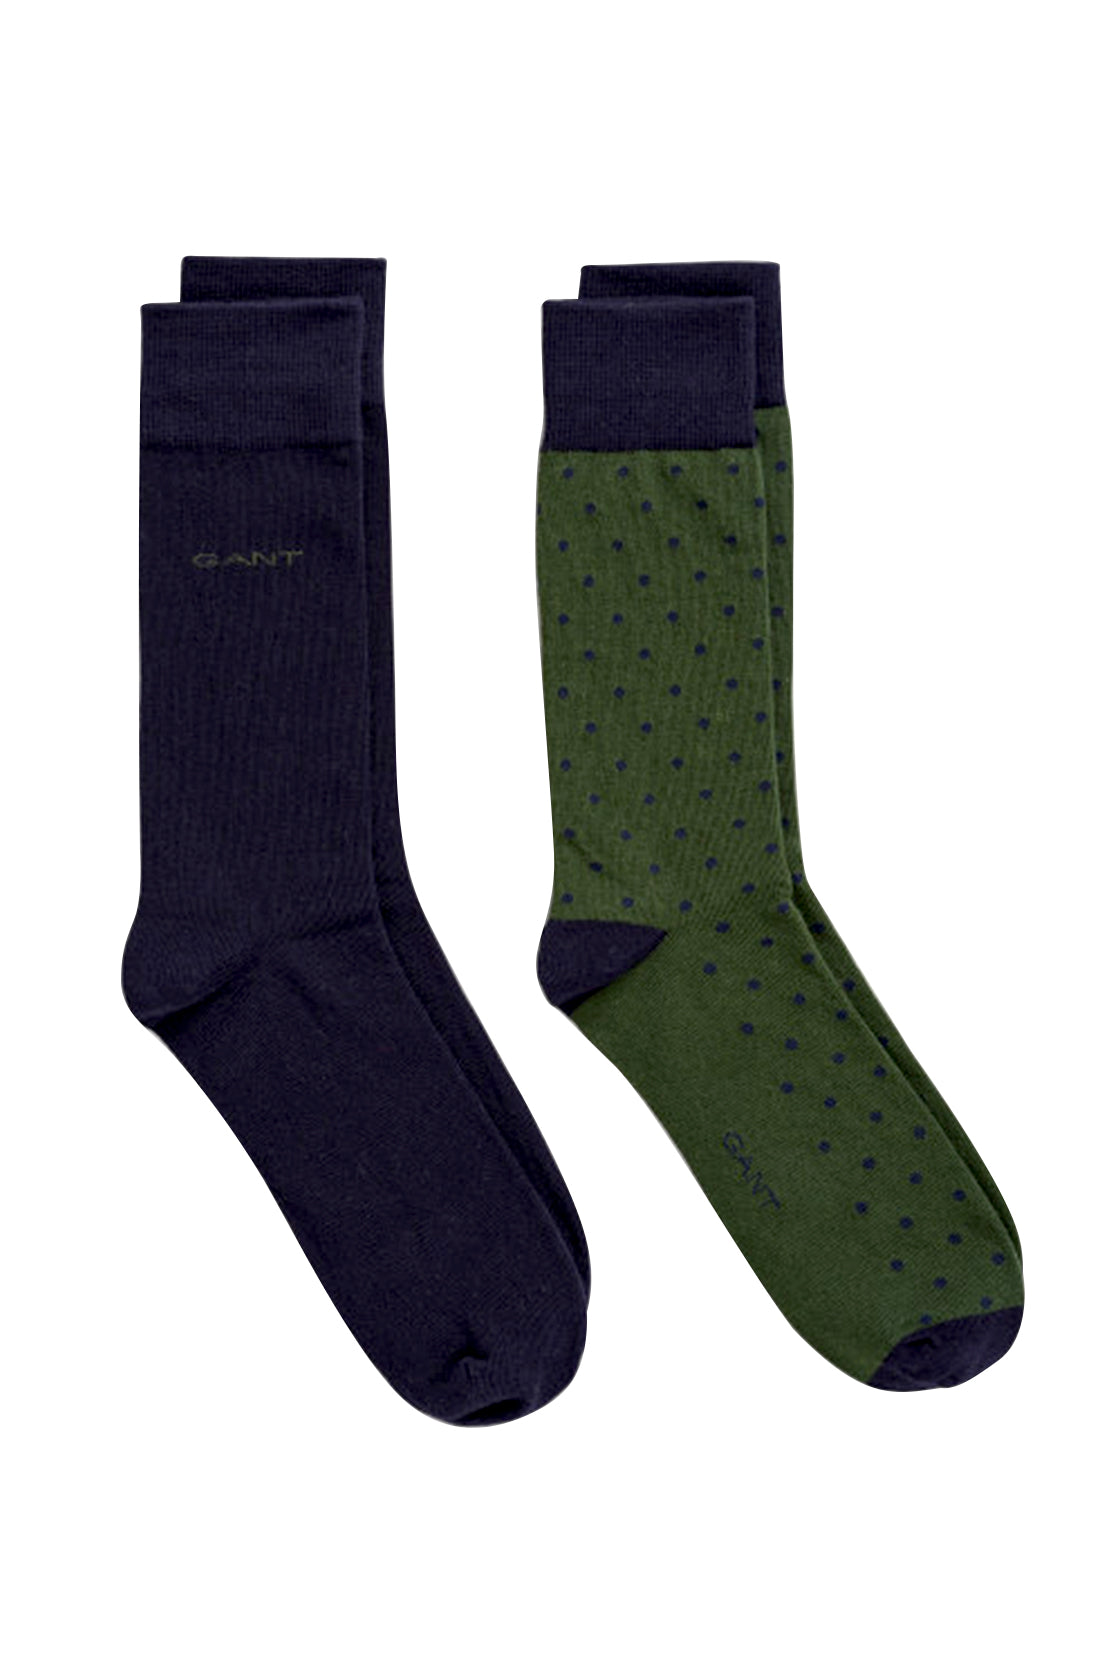 Gant Solid & Dot Socks 2PK Storm Green